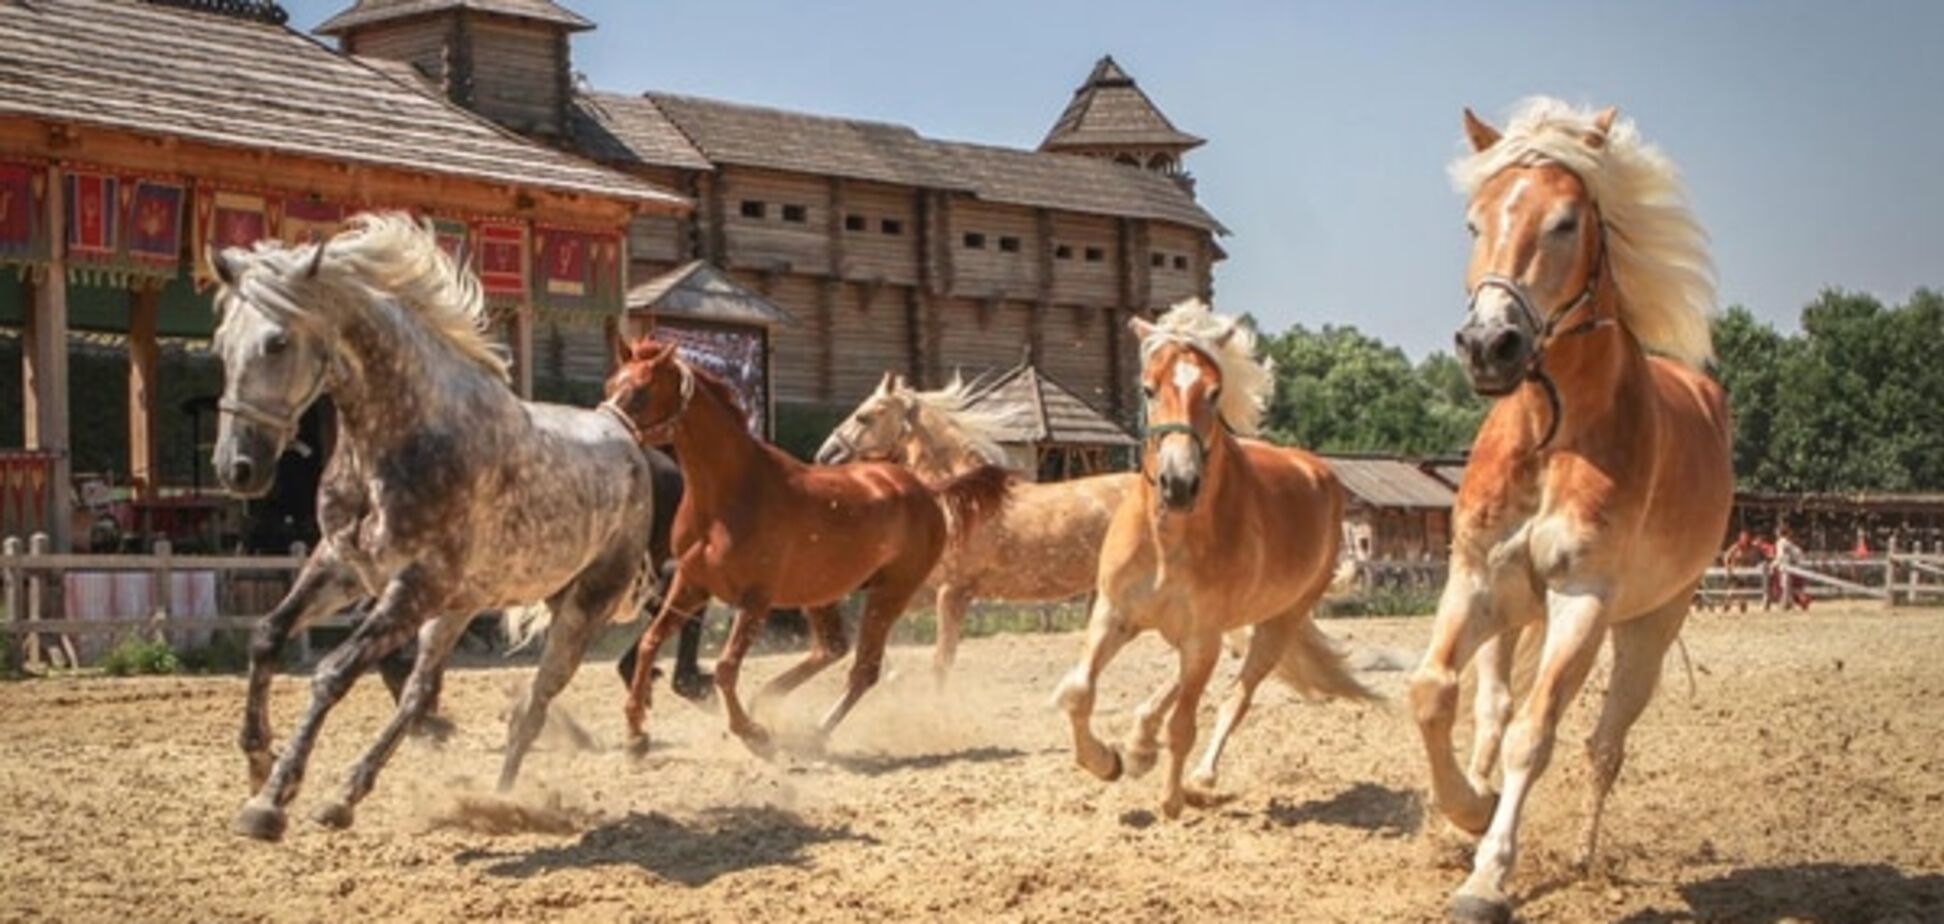 26-27 сентября в 'Парке Киевская Русь' пройдет выставка 'Царство лошадей' и фестиваль самопознания